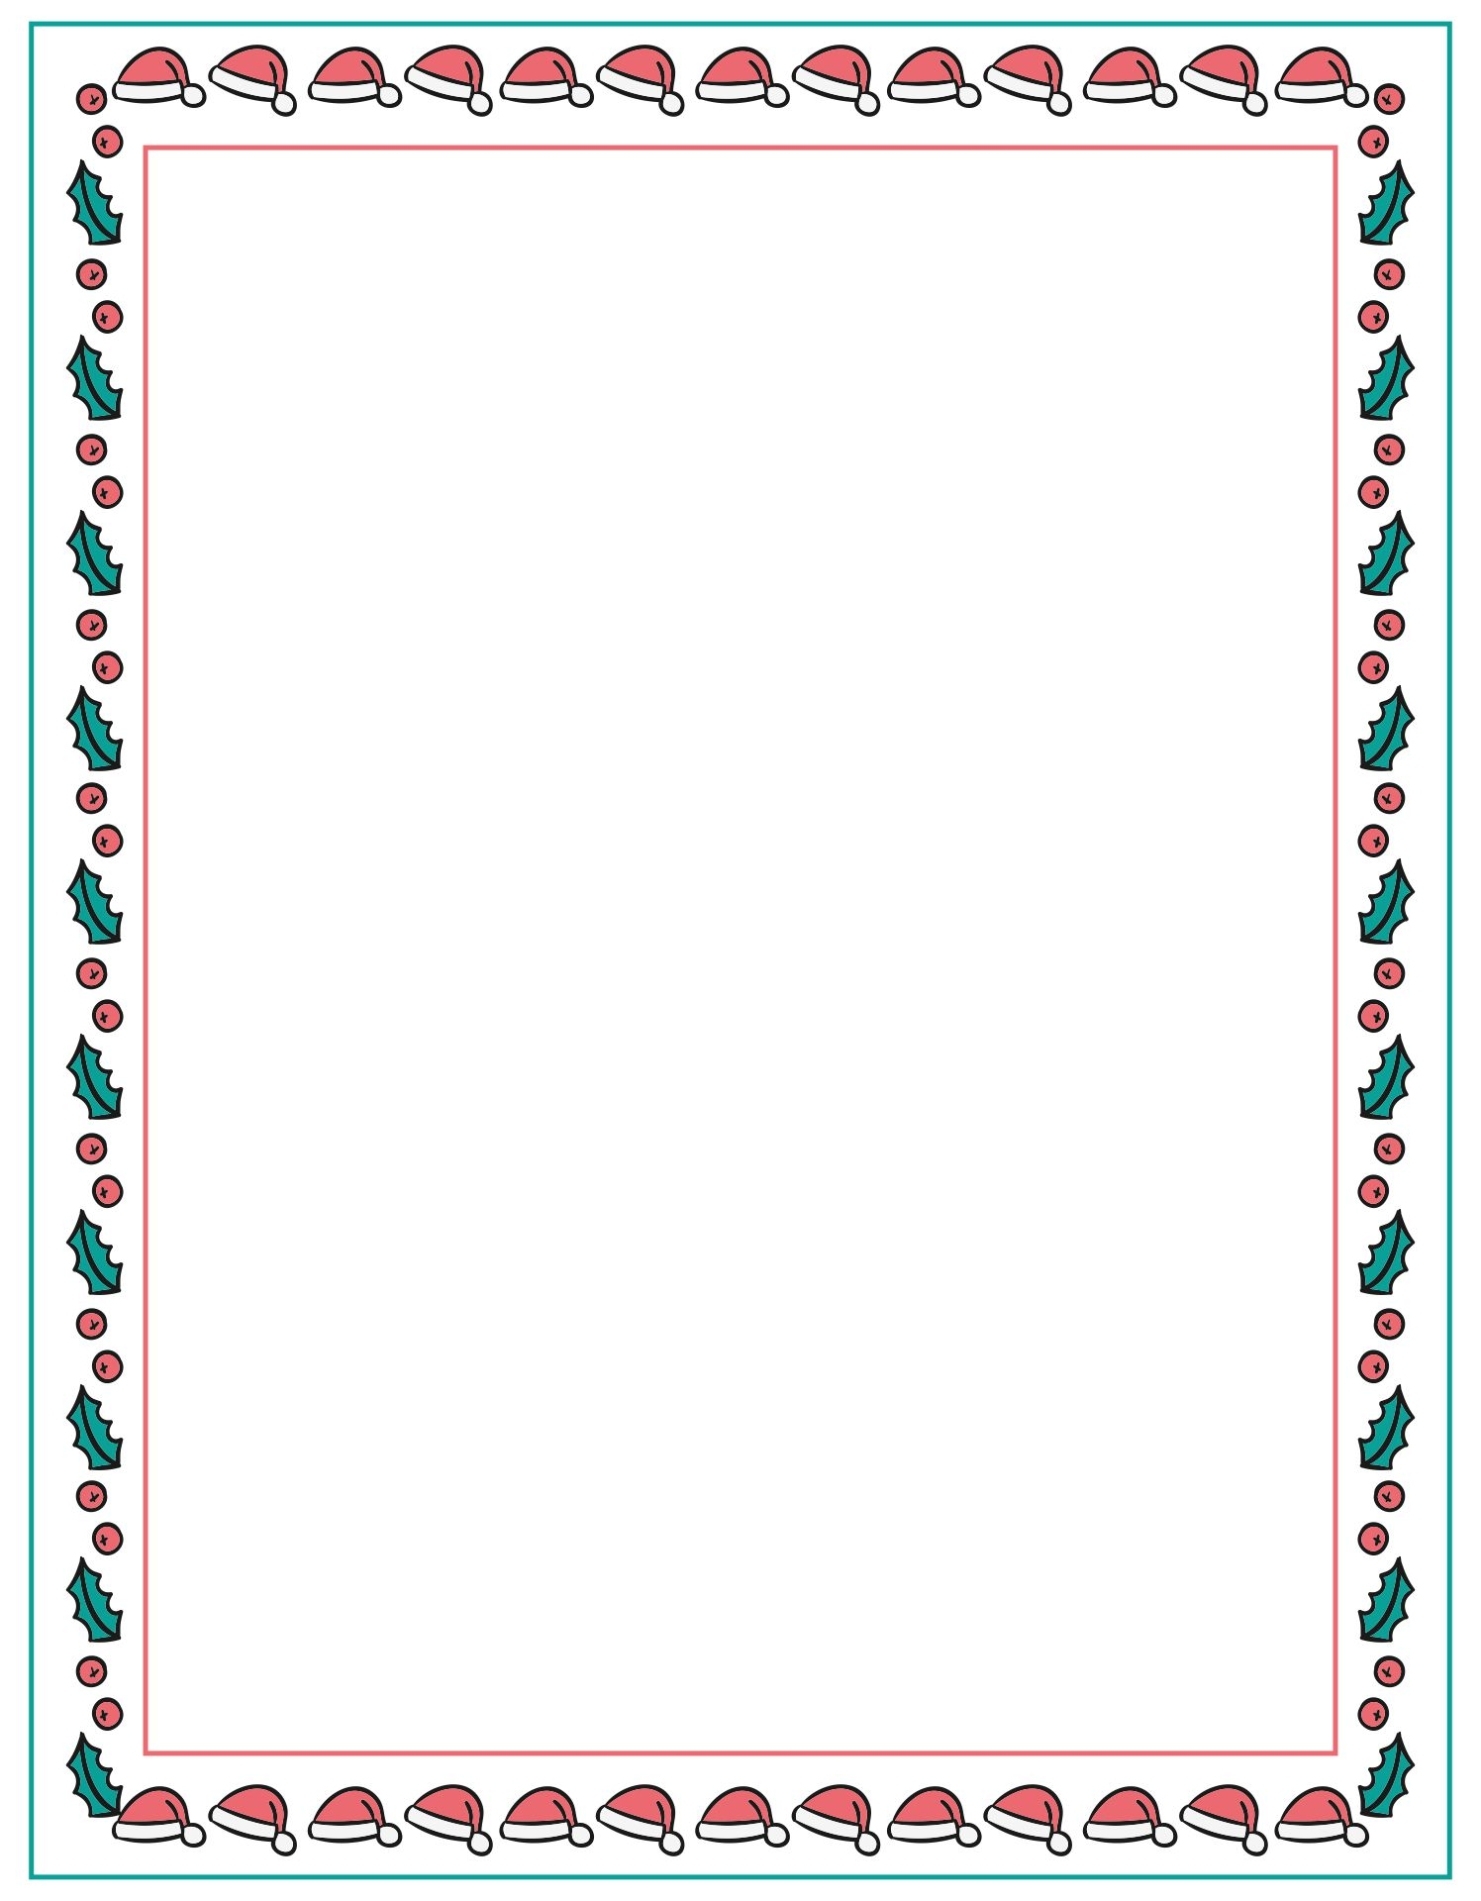 Christmas Letter Borders Free Printable For Christmas Border Word Template